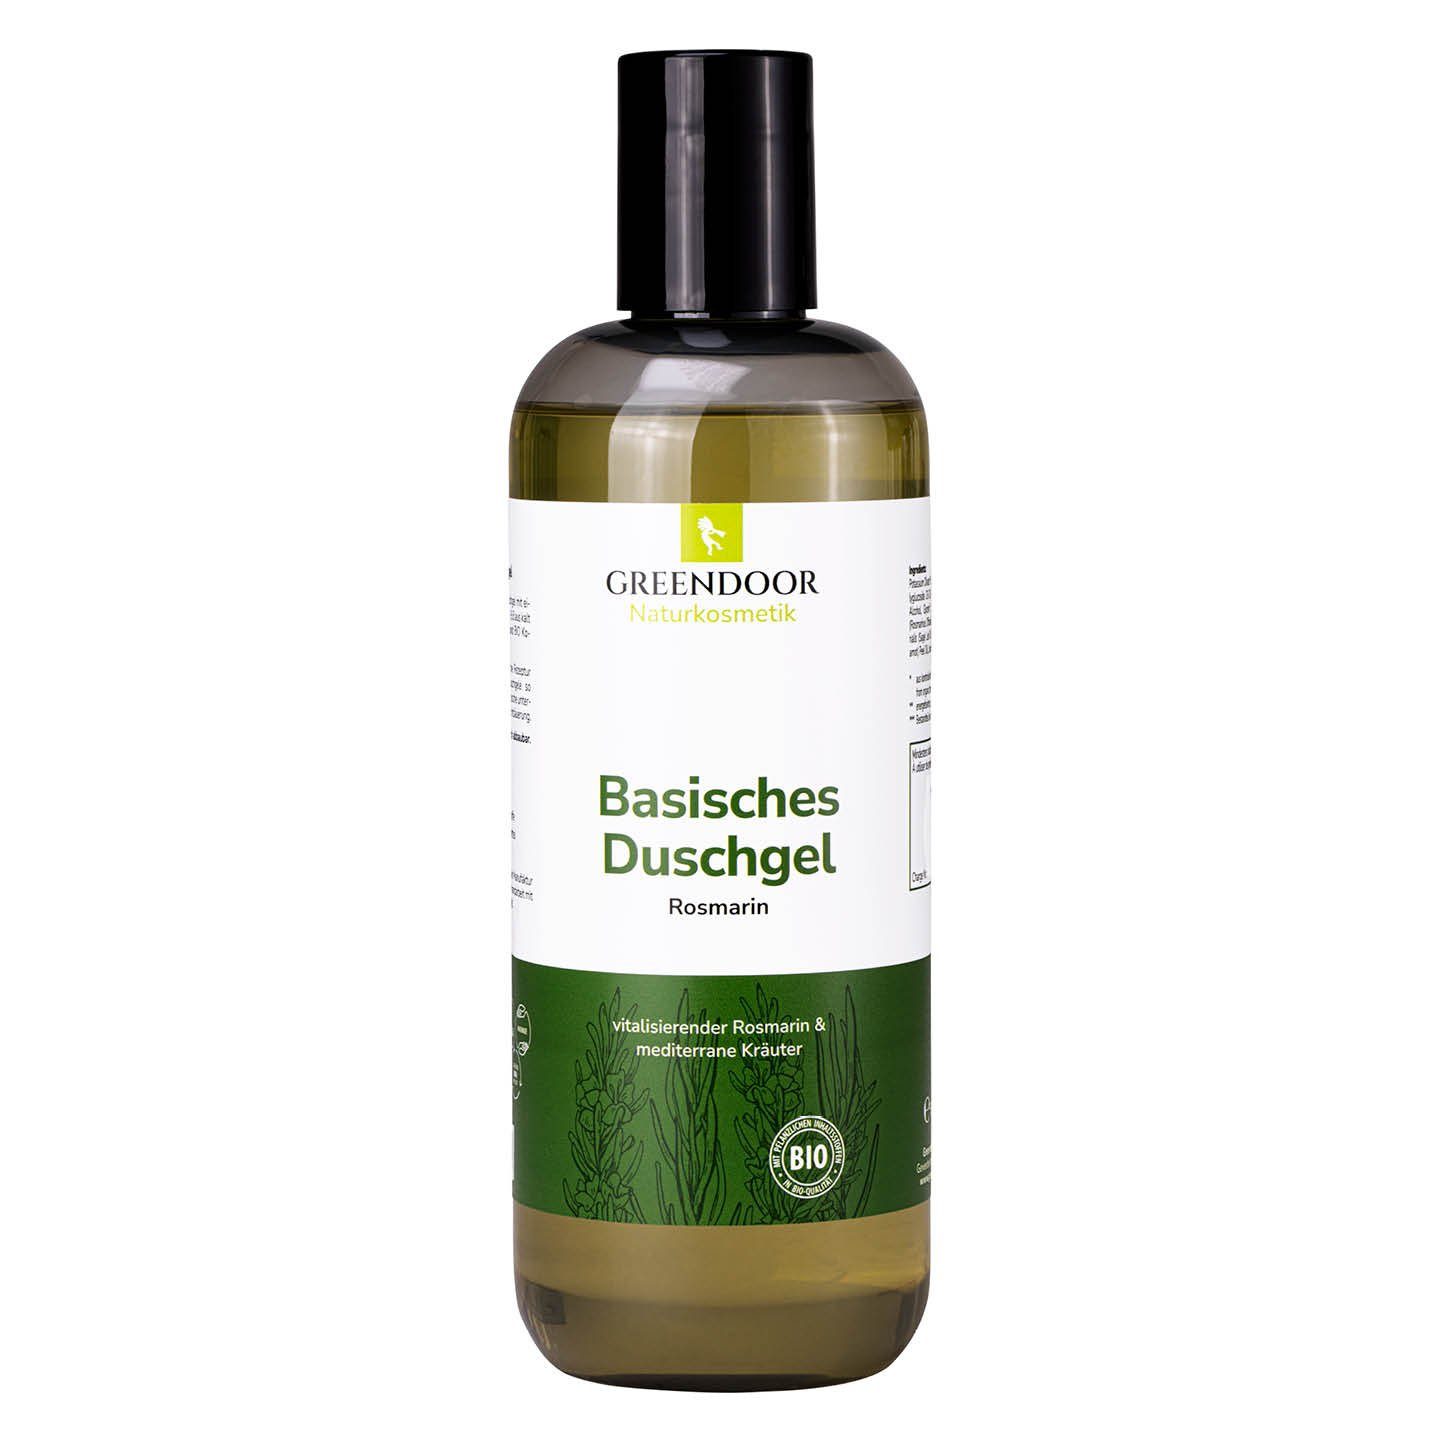 GREENDOOR Duschgel Basisches Duschgel XL Rosmarin | Duschgele